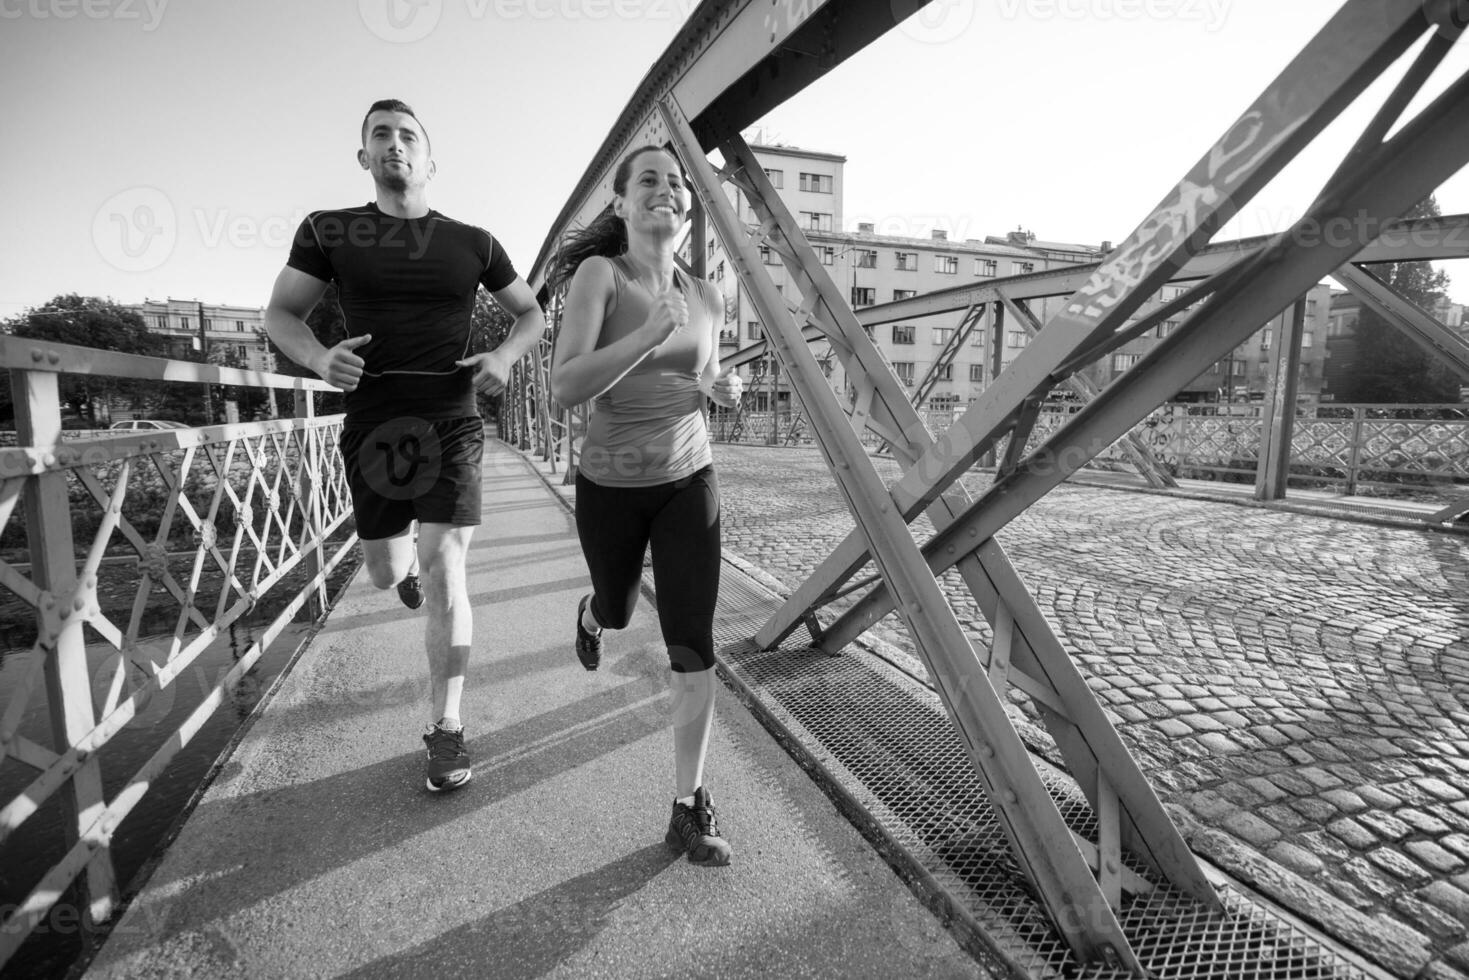 ungt par joggar över bron i staden foto